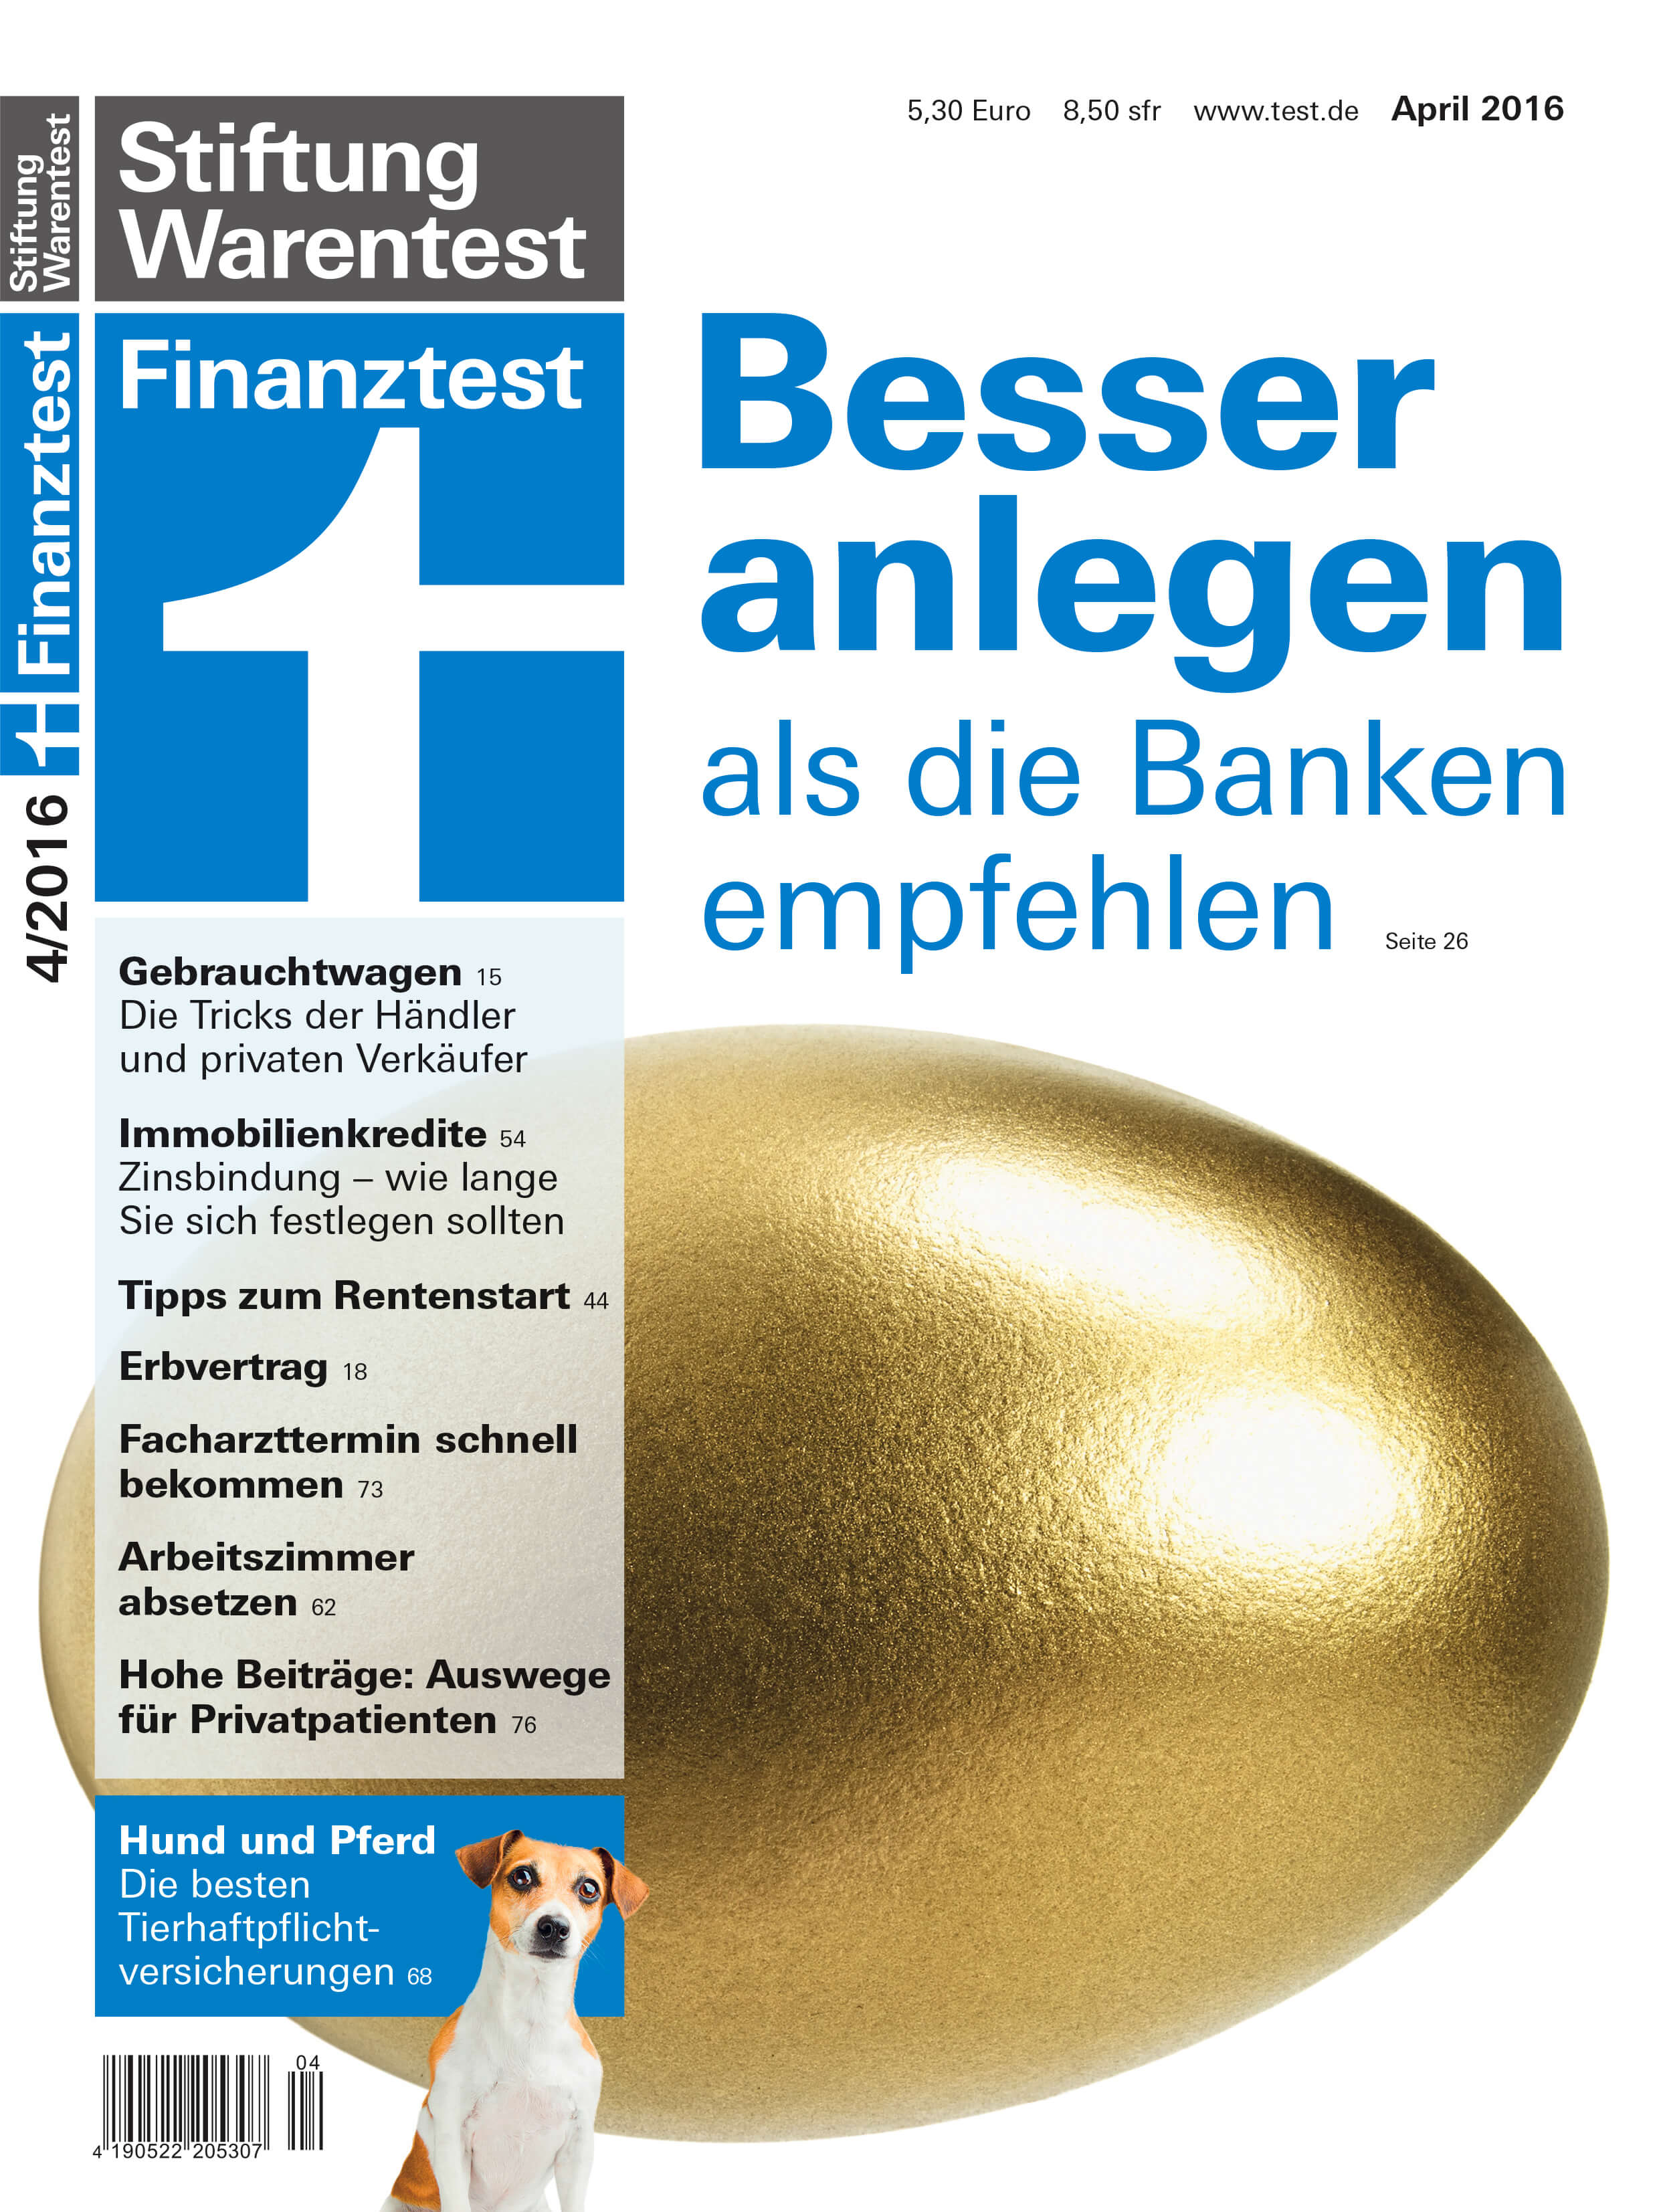 trigonus_stiftung_warentest_finanztest